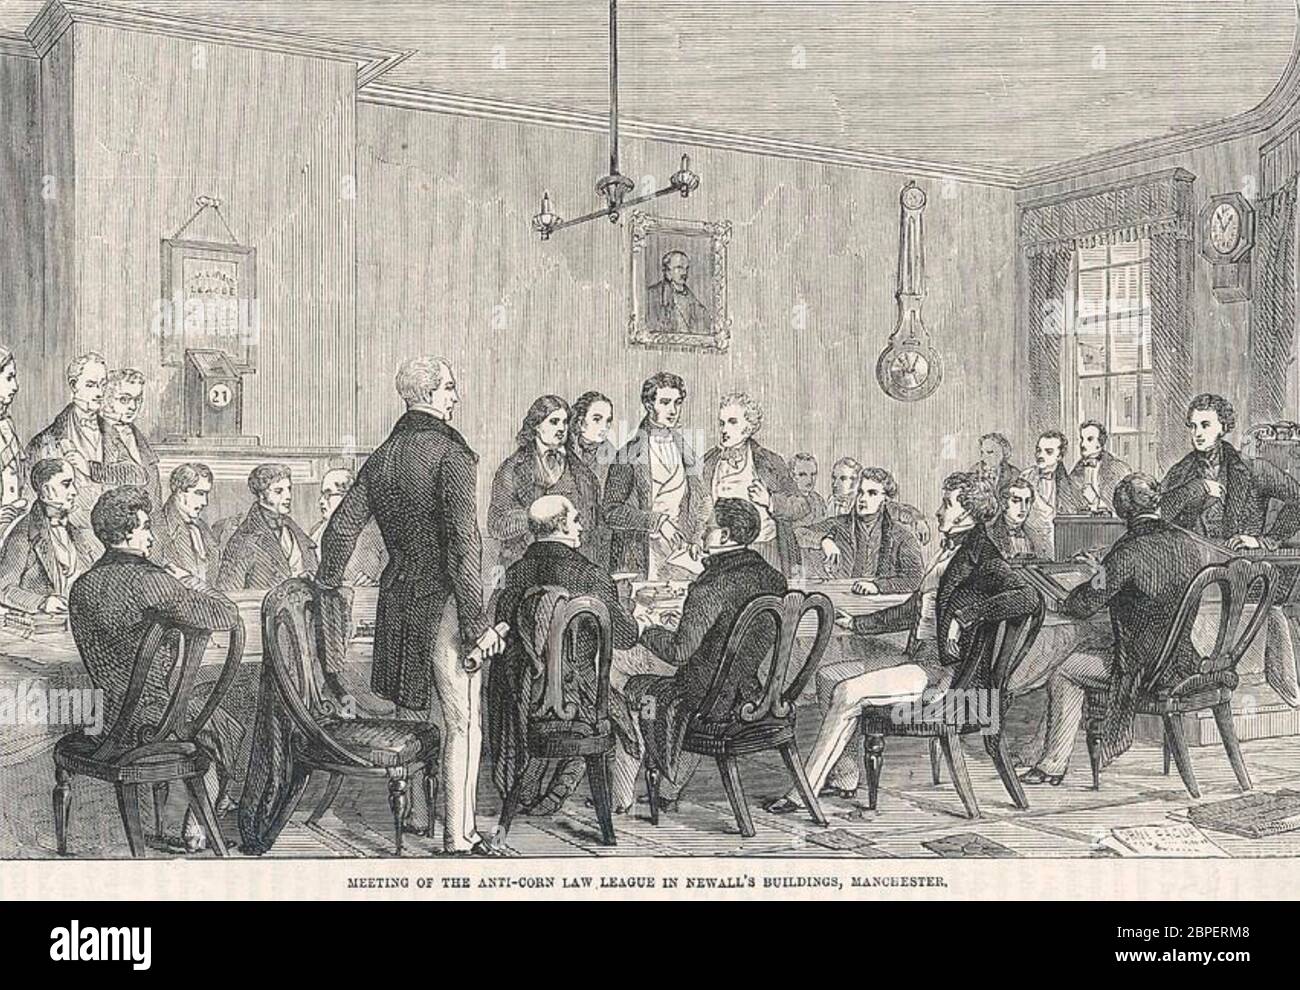 RENCONTRE DE LA LIGUE ANTI-DROIT DU MAÏS à son siège de Manchester vers 1840 Banque D'Images